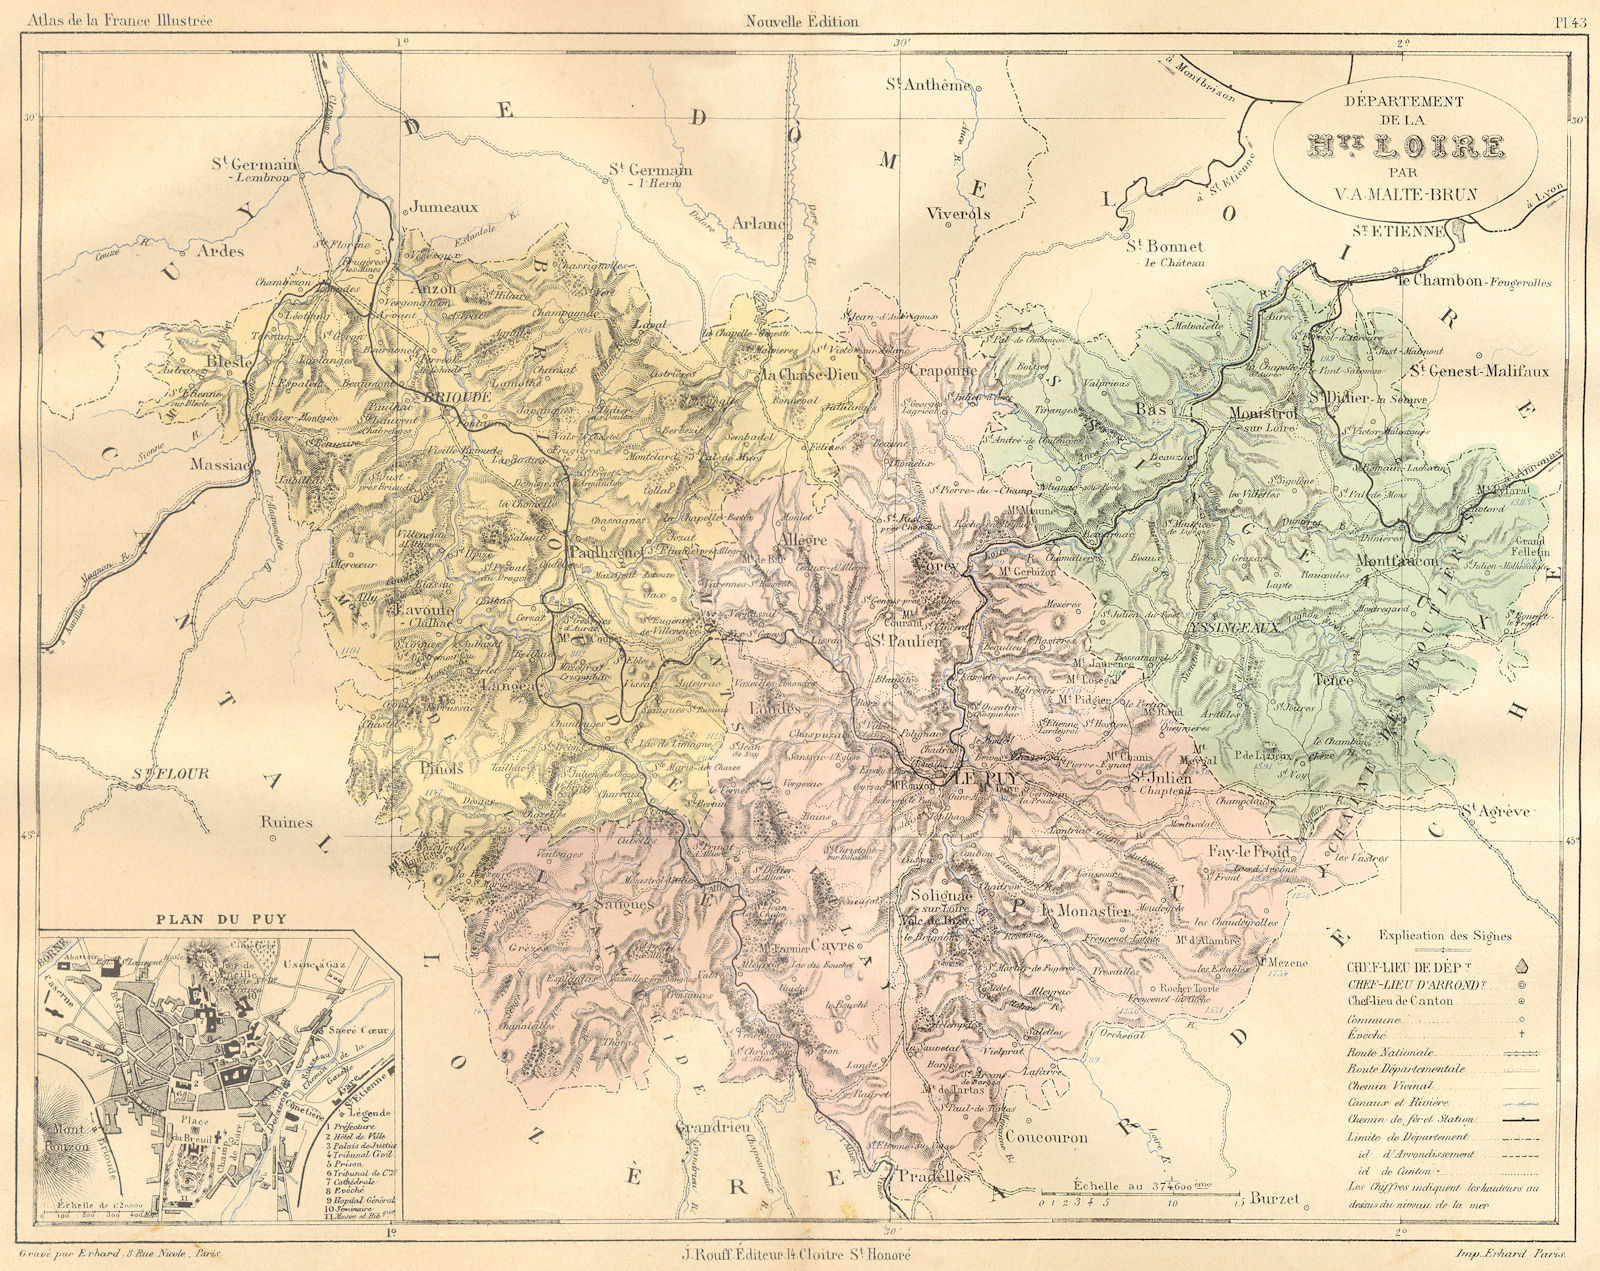 HAUTE-LOIRE. Departement de Hte; plan du Puy 1882 old antique map chart